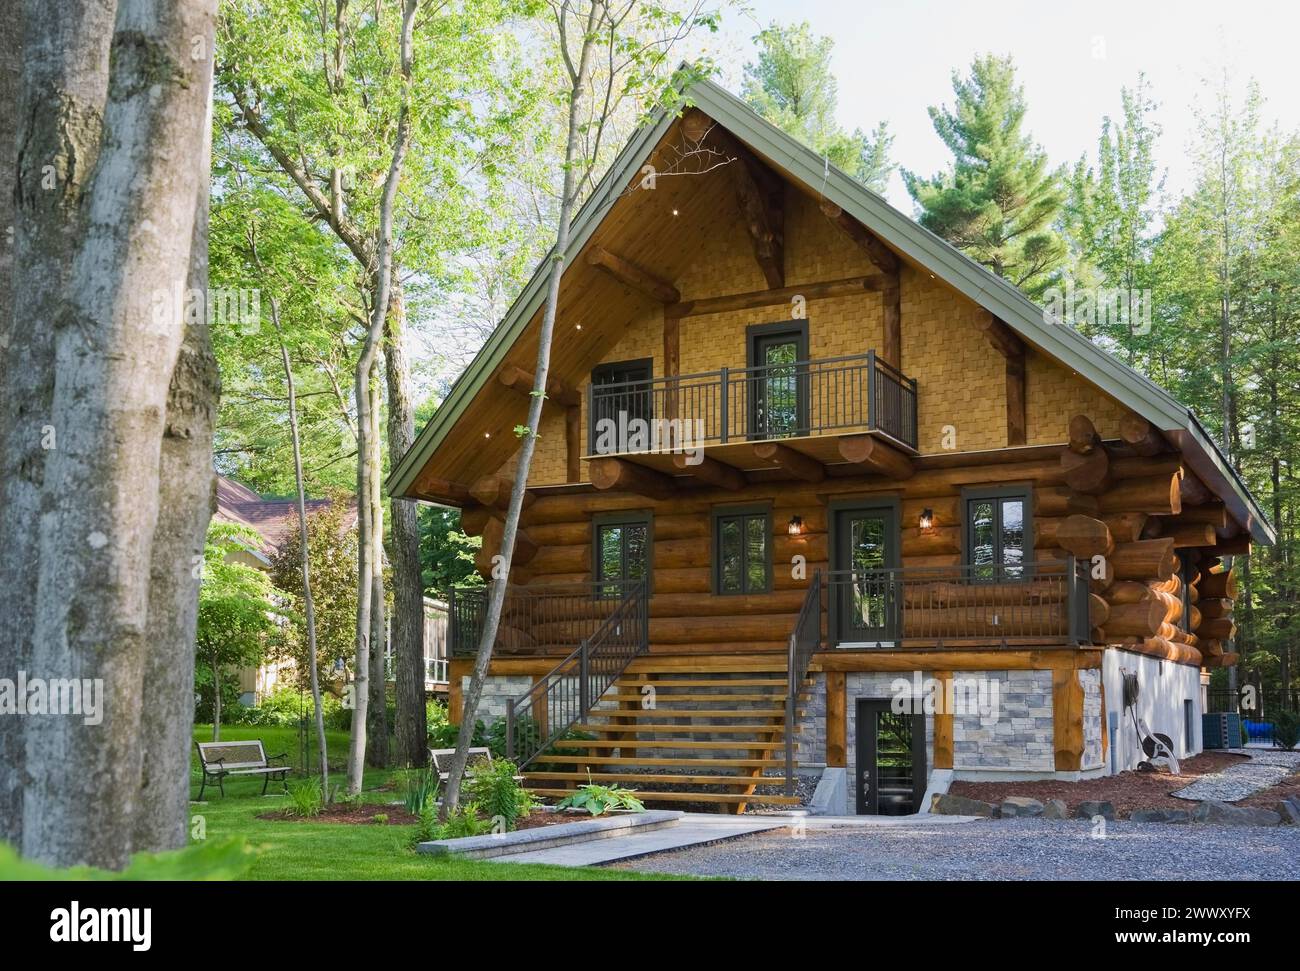 Lujosa casa de cabaña de dos pisos de estilo escandinavo a finales de la primavera, Quebec, Canadá Foto de stock